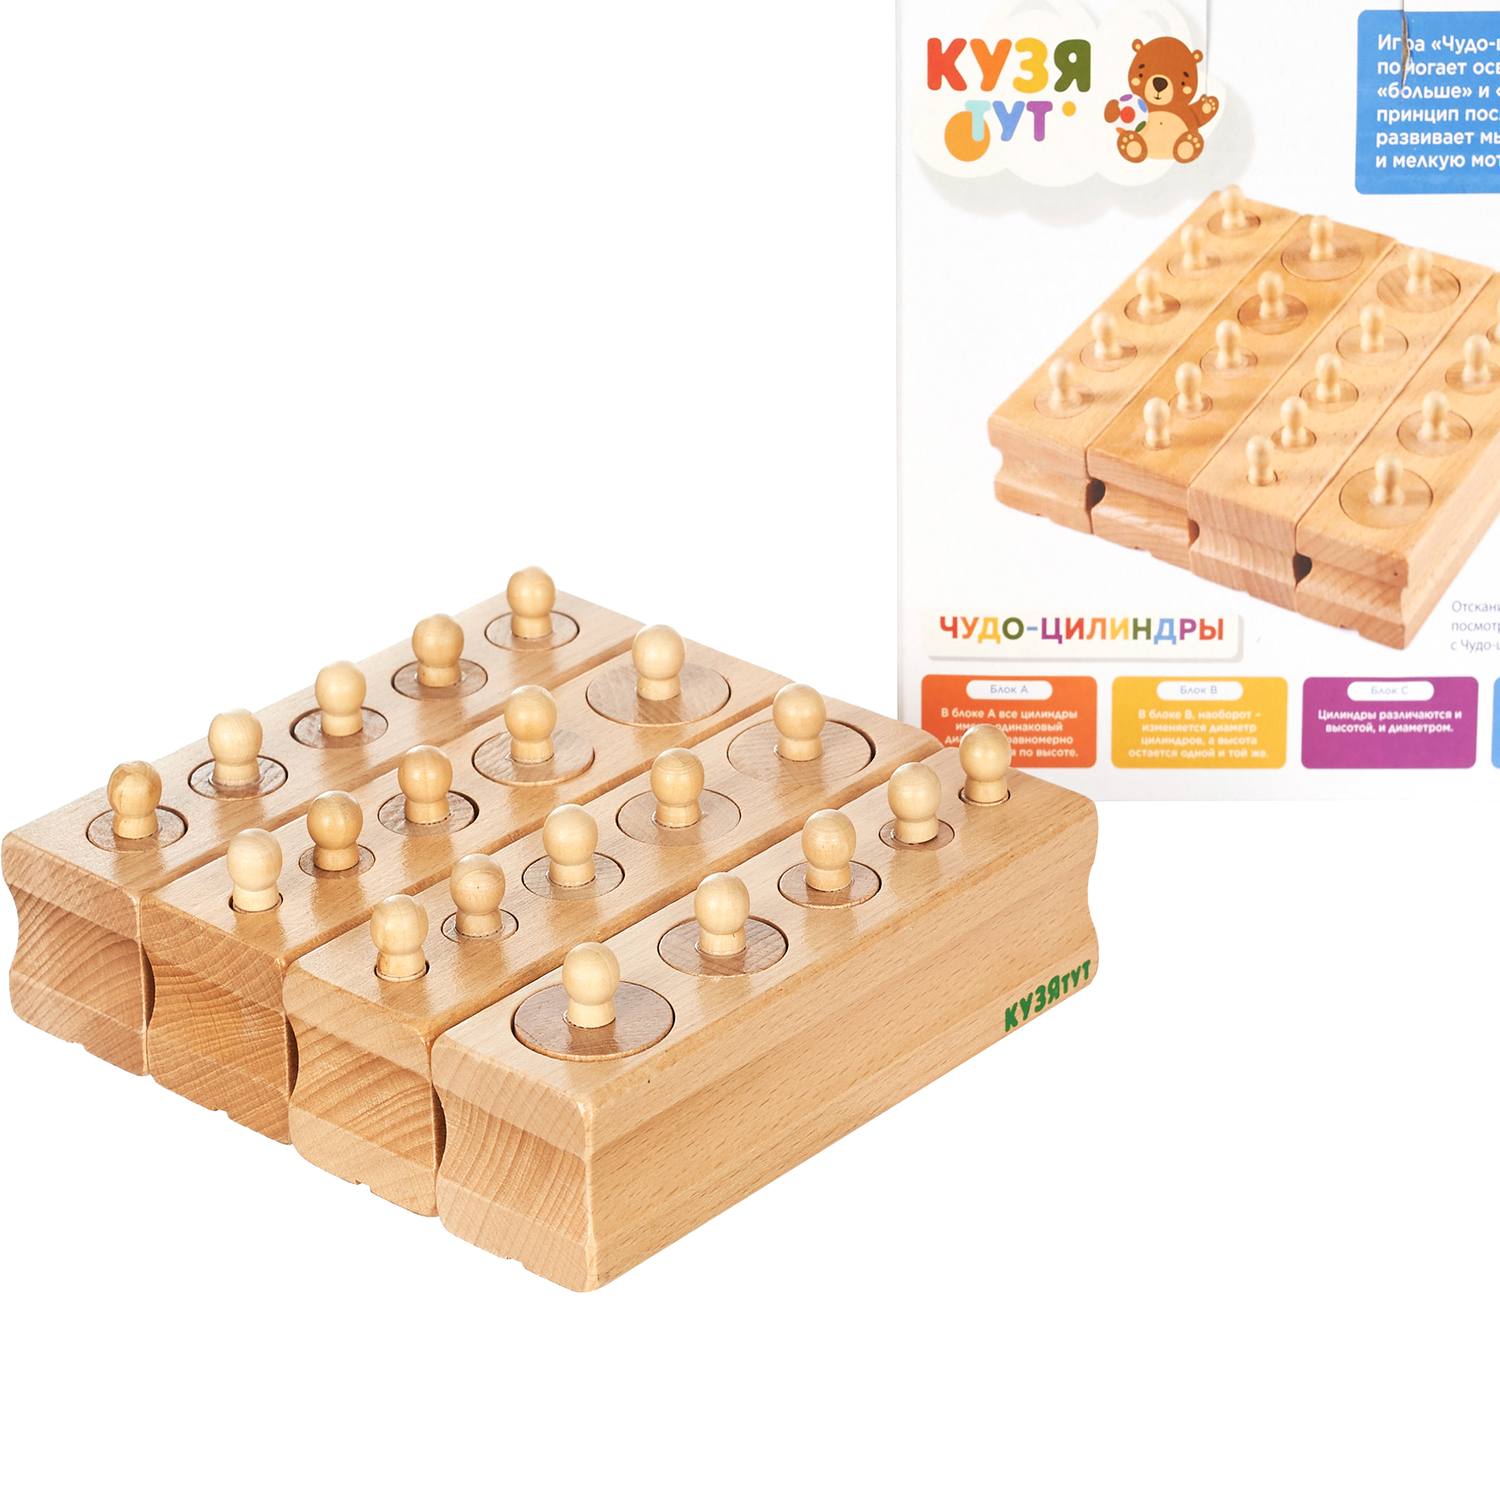 Развивающая игра Монтессори КУЗЯ ТУТ Игровой набор Чудо цилиндры из дерева (Бук) 4 блока с бочонками в наборе - фото 15